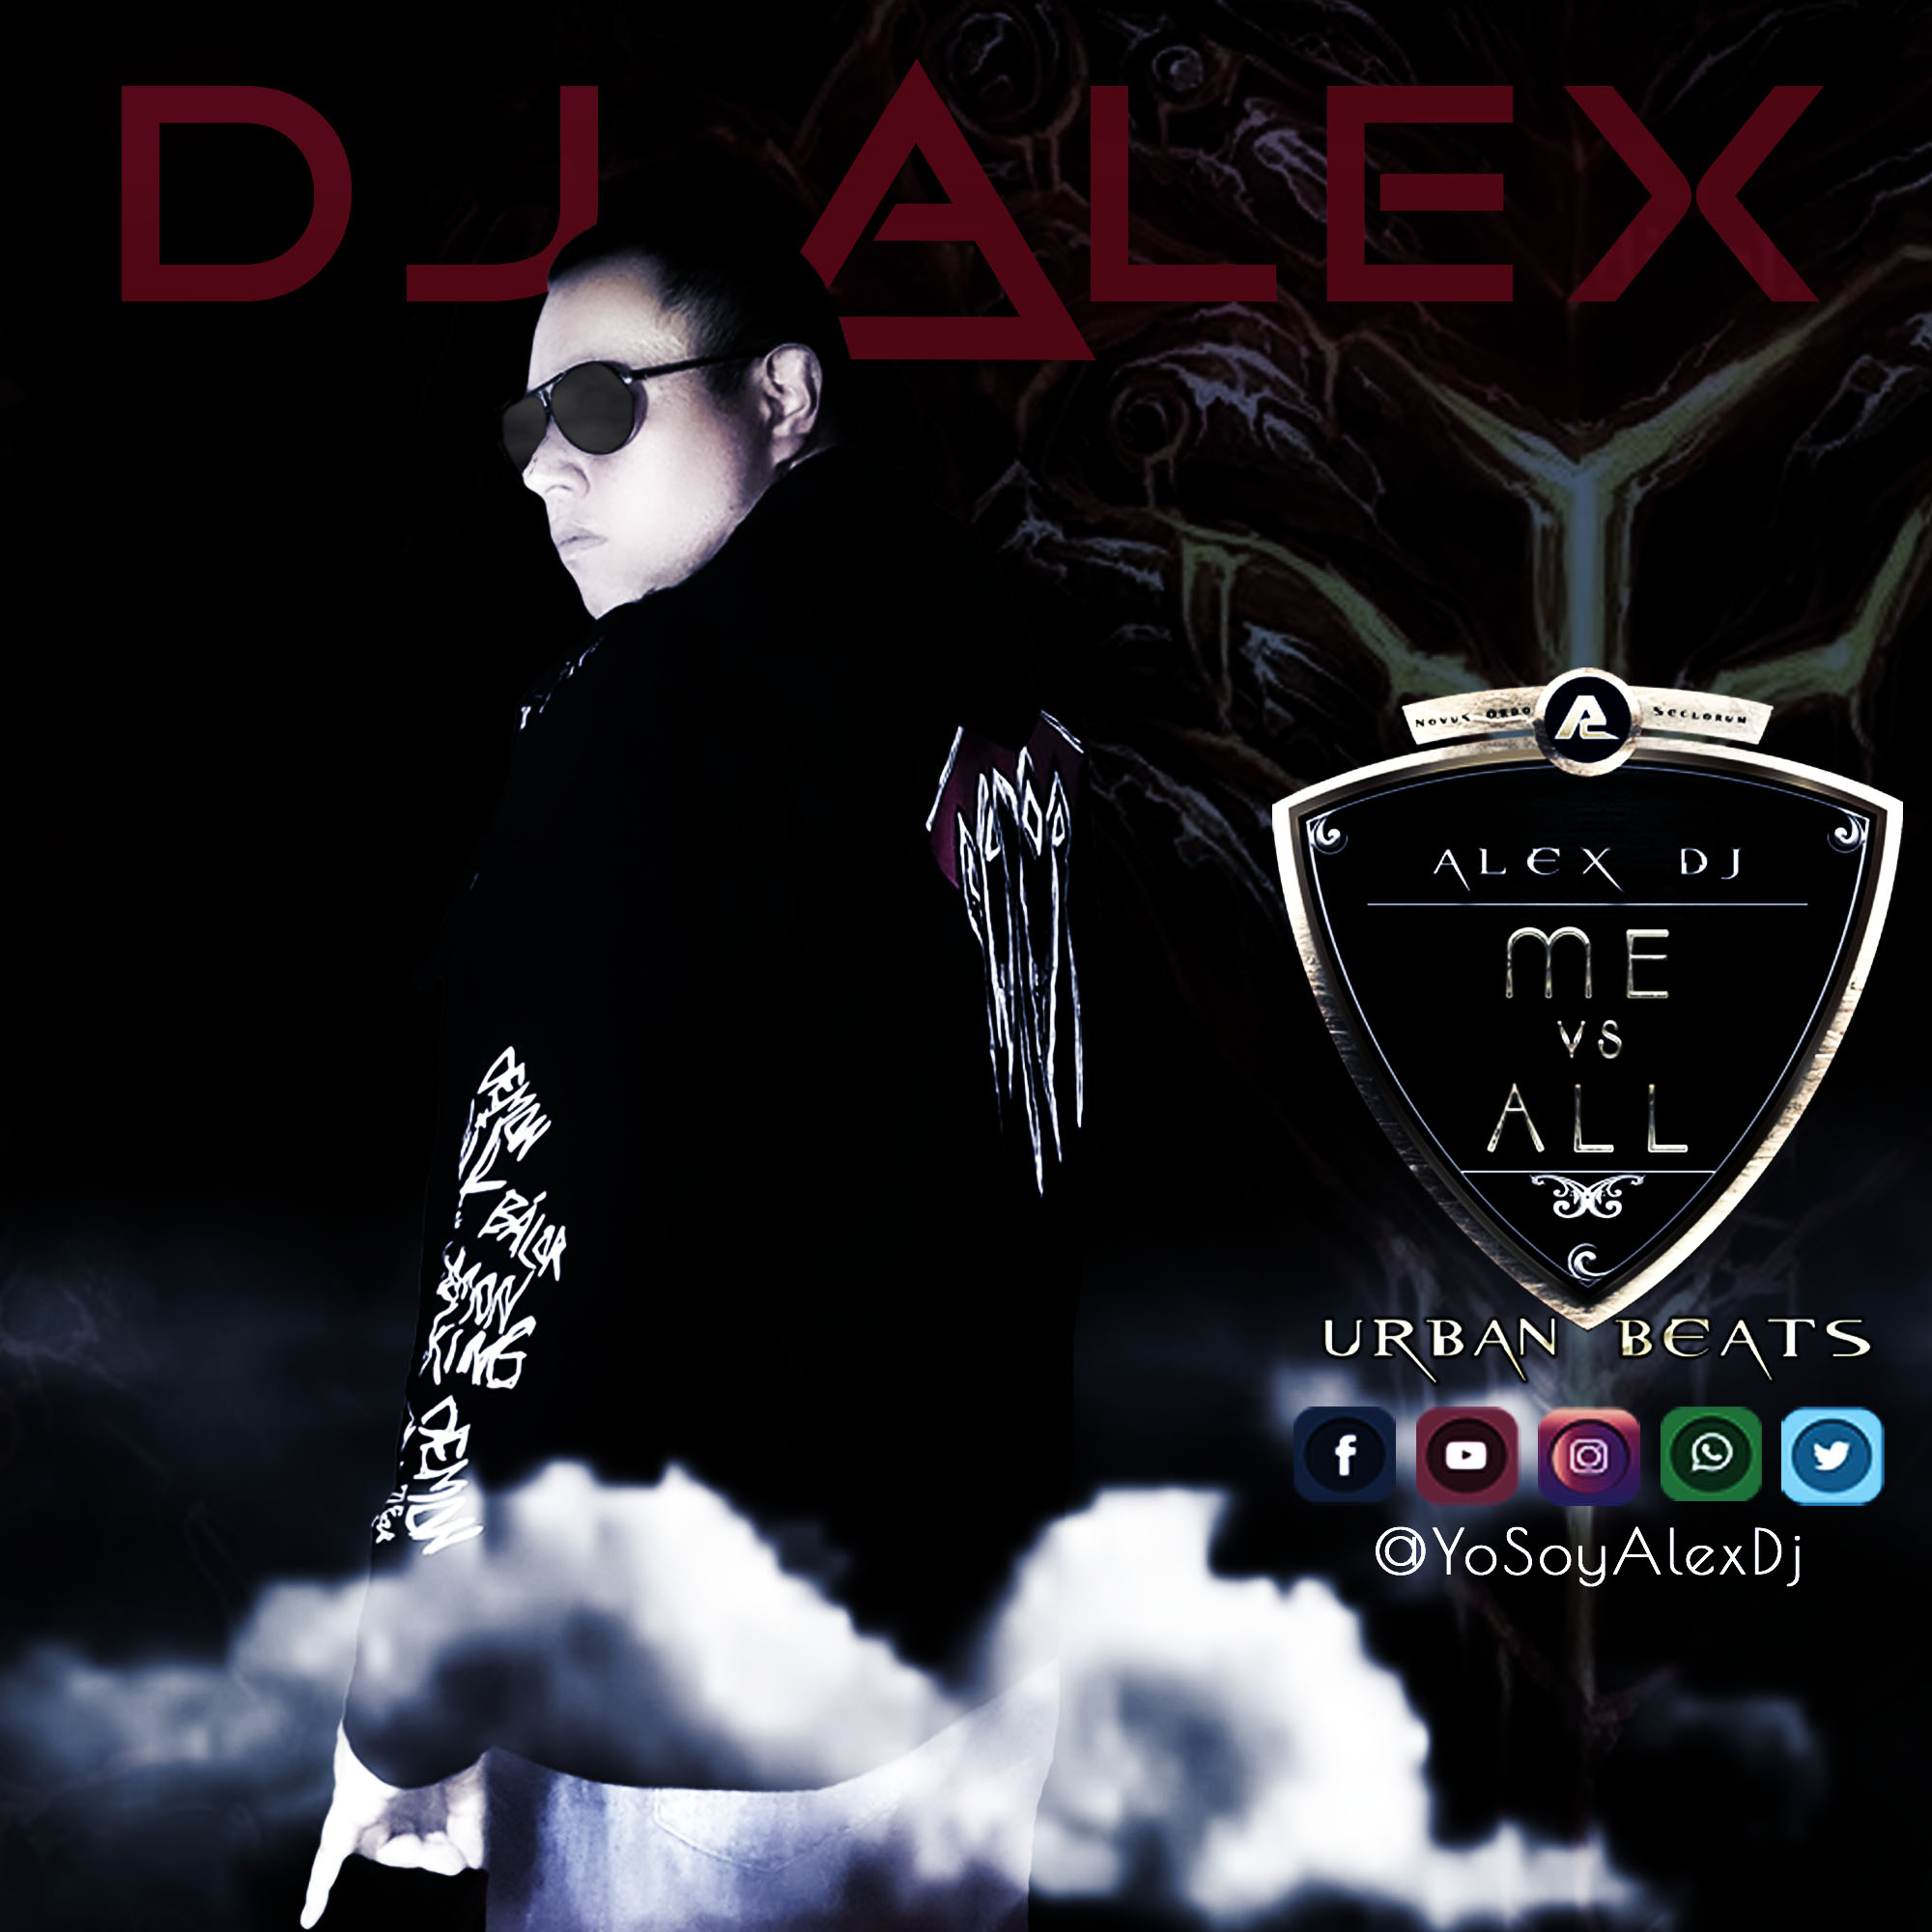 images/Alex-DJ-2017-05-01-perfil-black-red-2.jpg